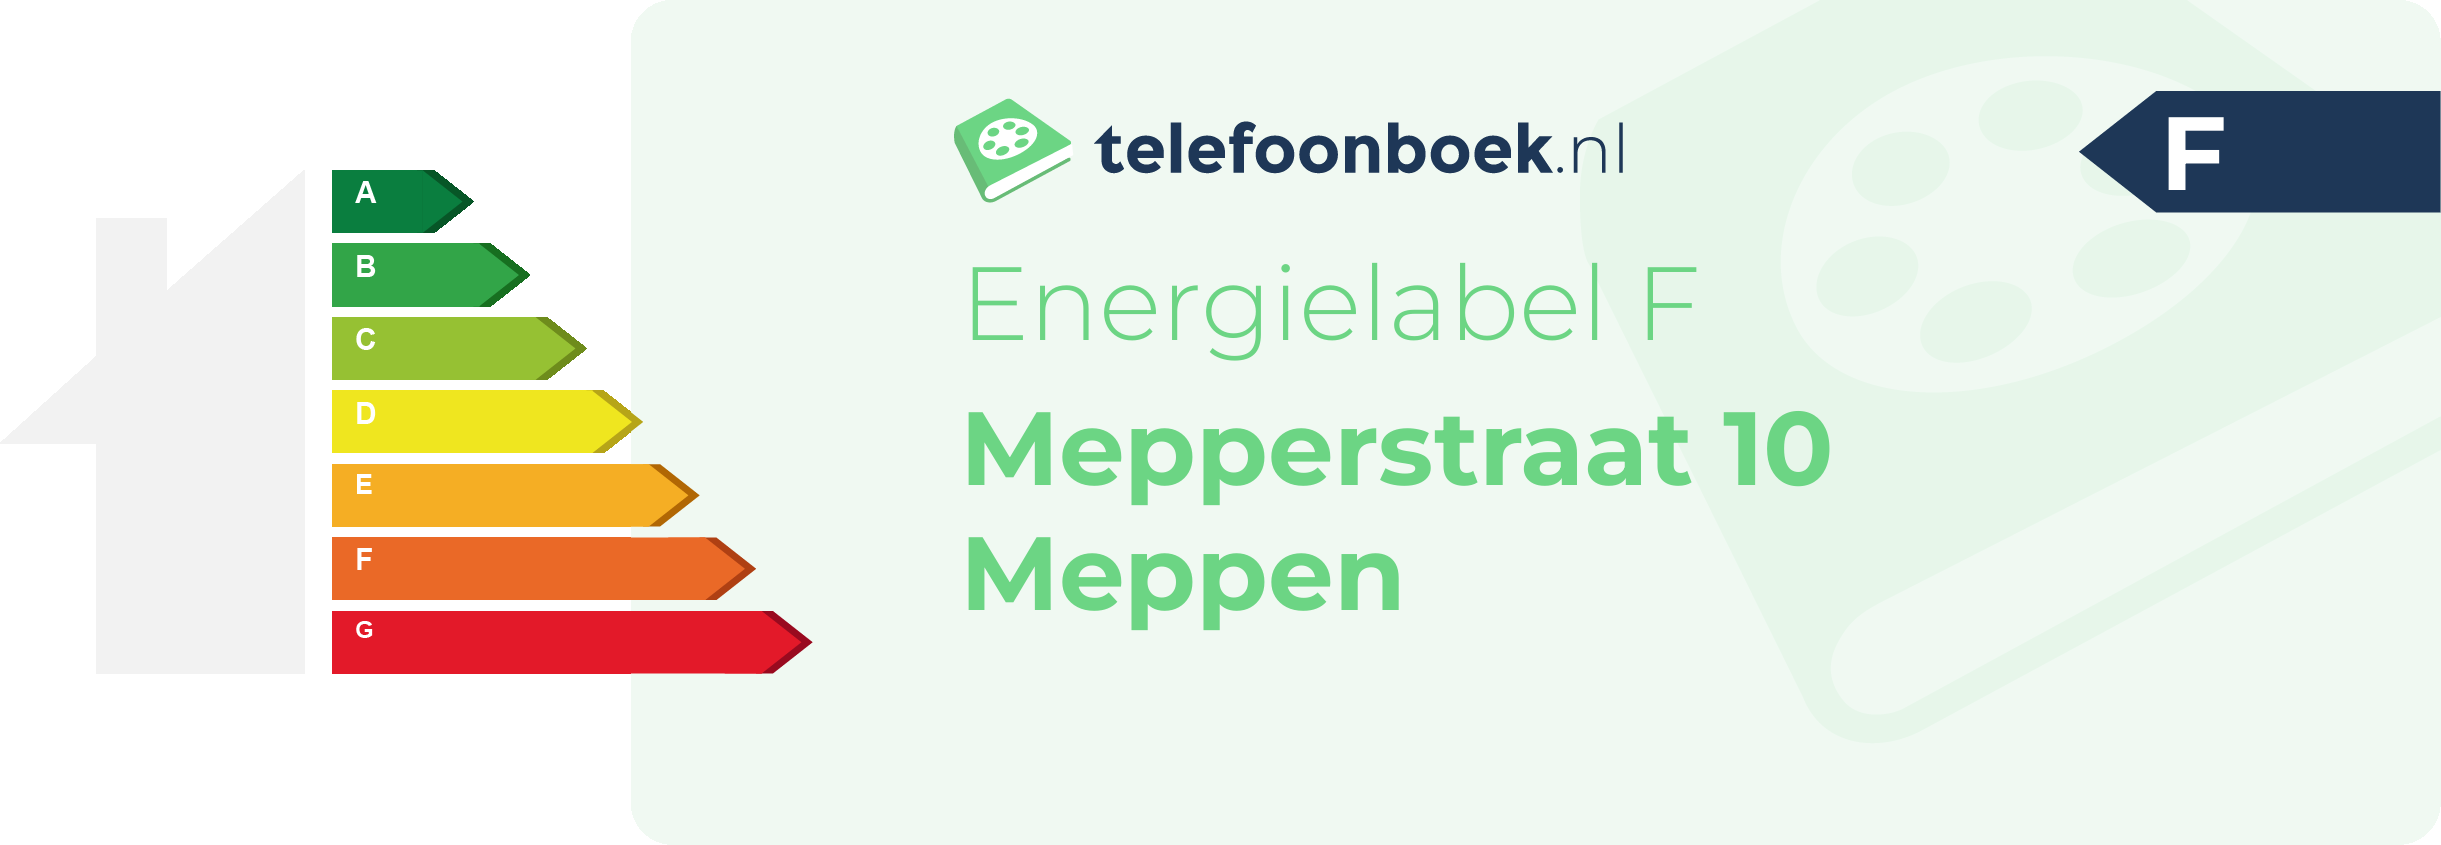 Energielabel Mepperstraat 10 Meppen